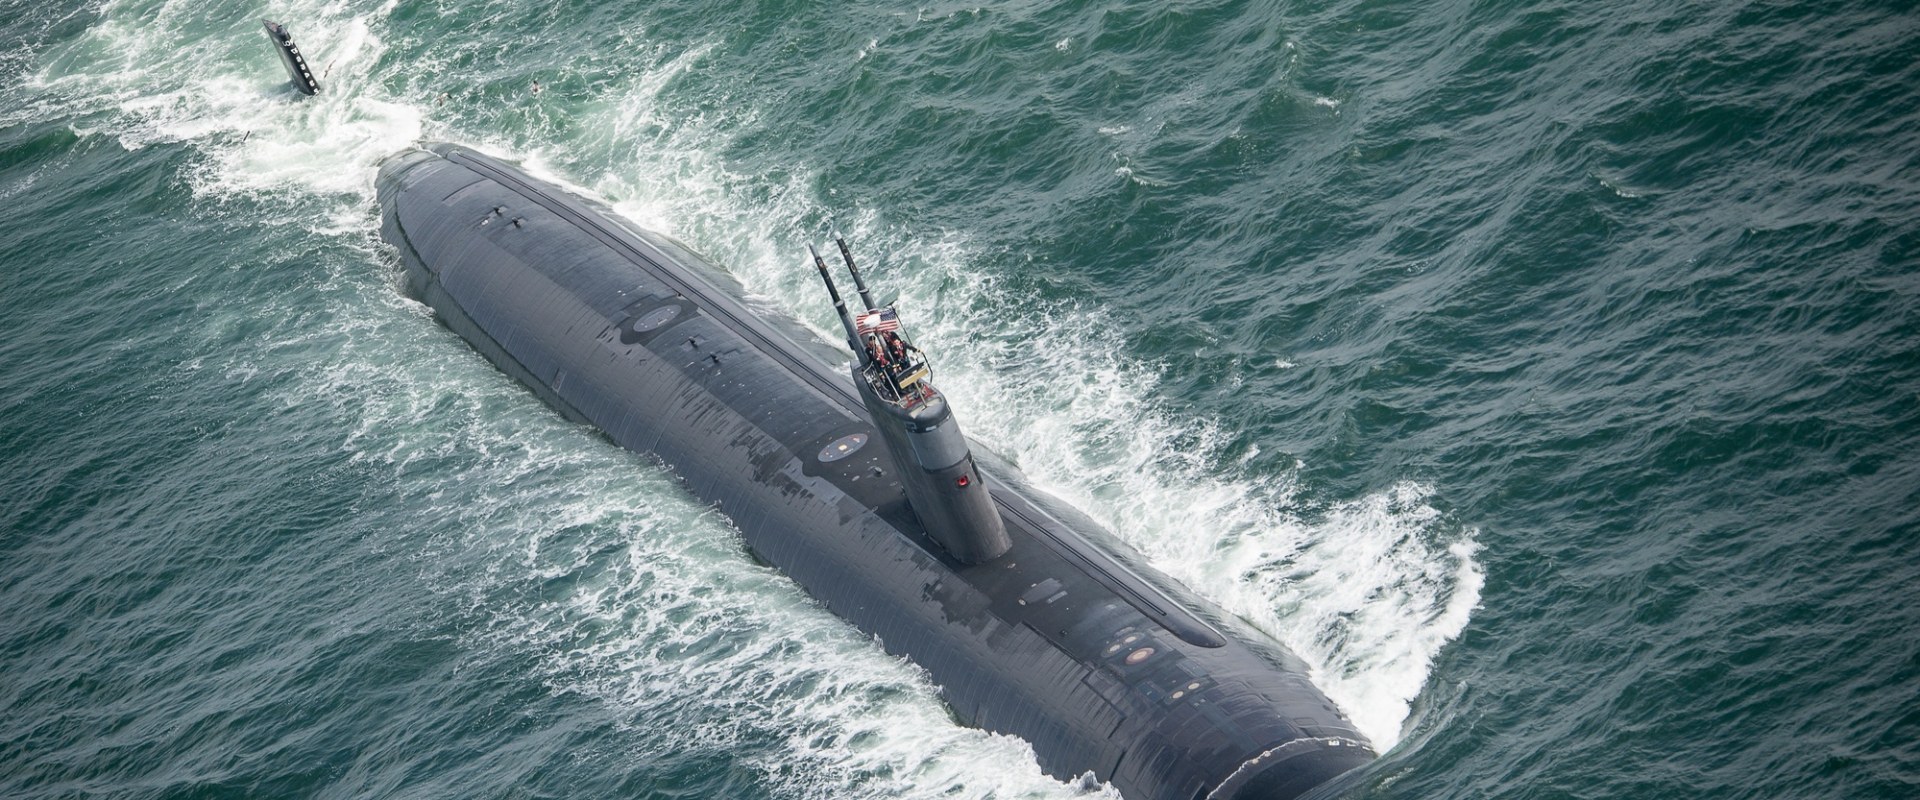 Where is the USS Pasadena Submarine Located?